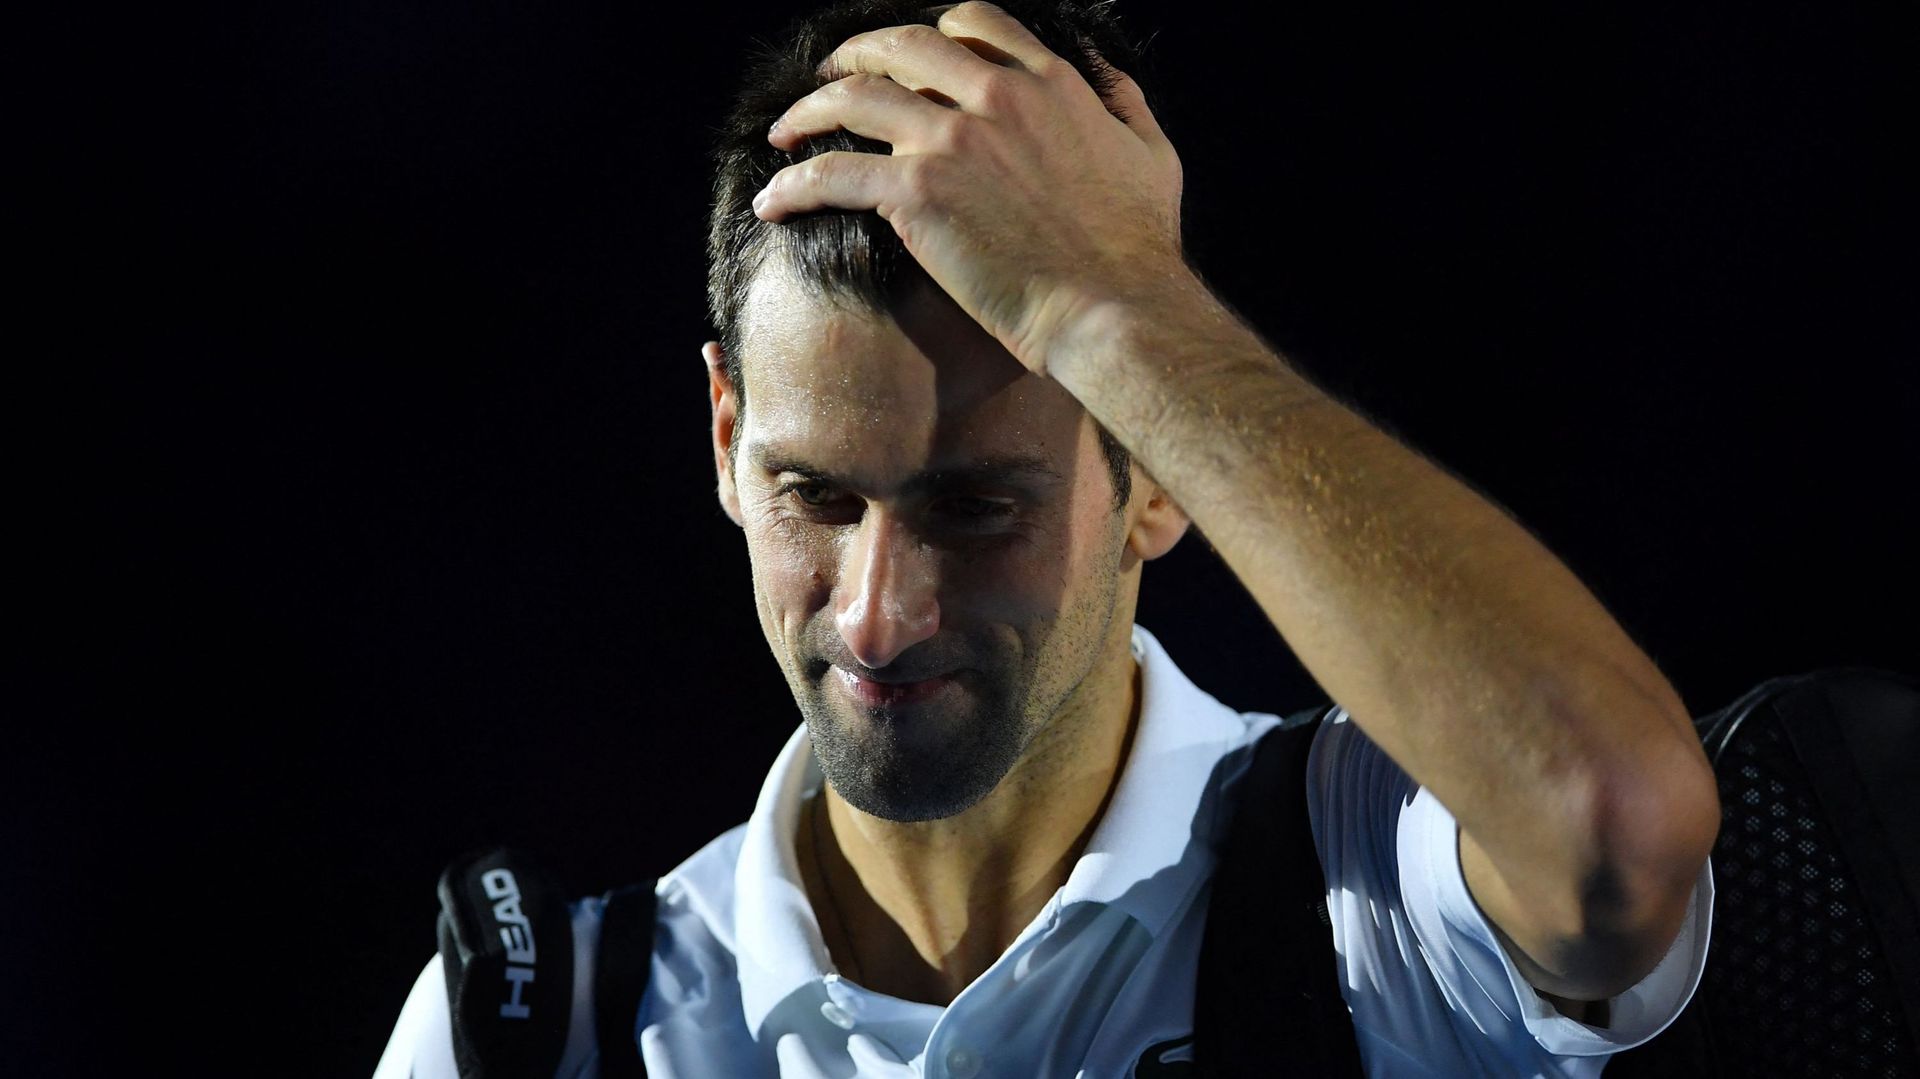 Le gouvernement australien souligne dimanche que le N.1 mondial du tennis Novak Djokovic "n’est pas vacciné contre le Covid-19"